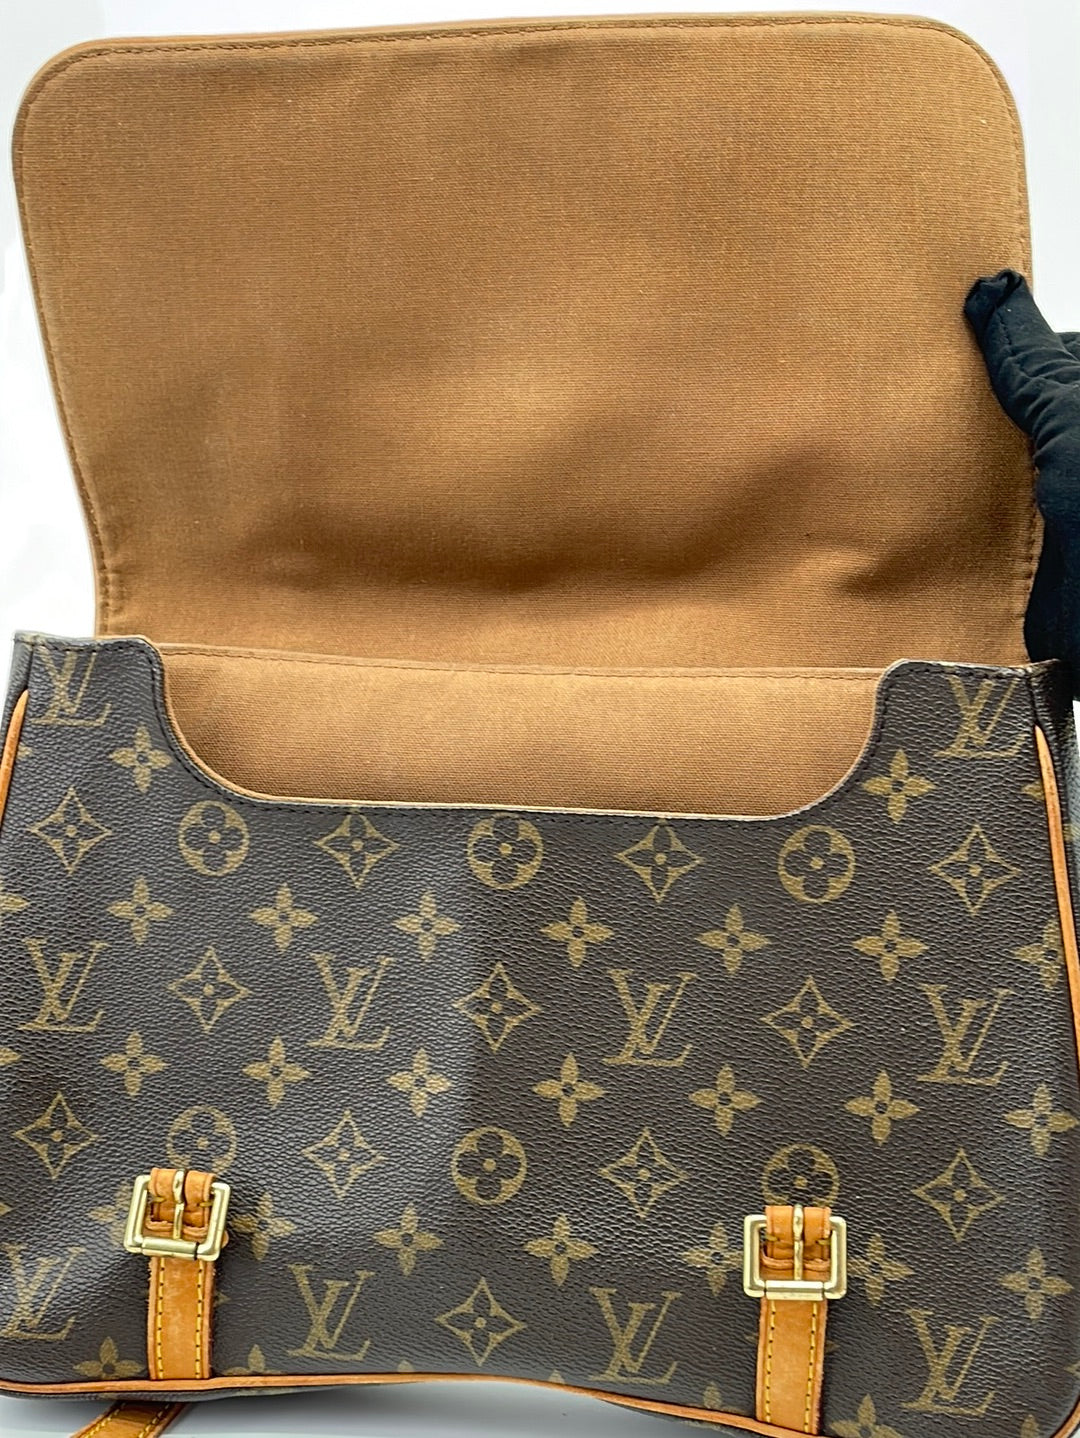 LOUIS VUITTON Monogram Marelle Sac a Dos Convertible Bag